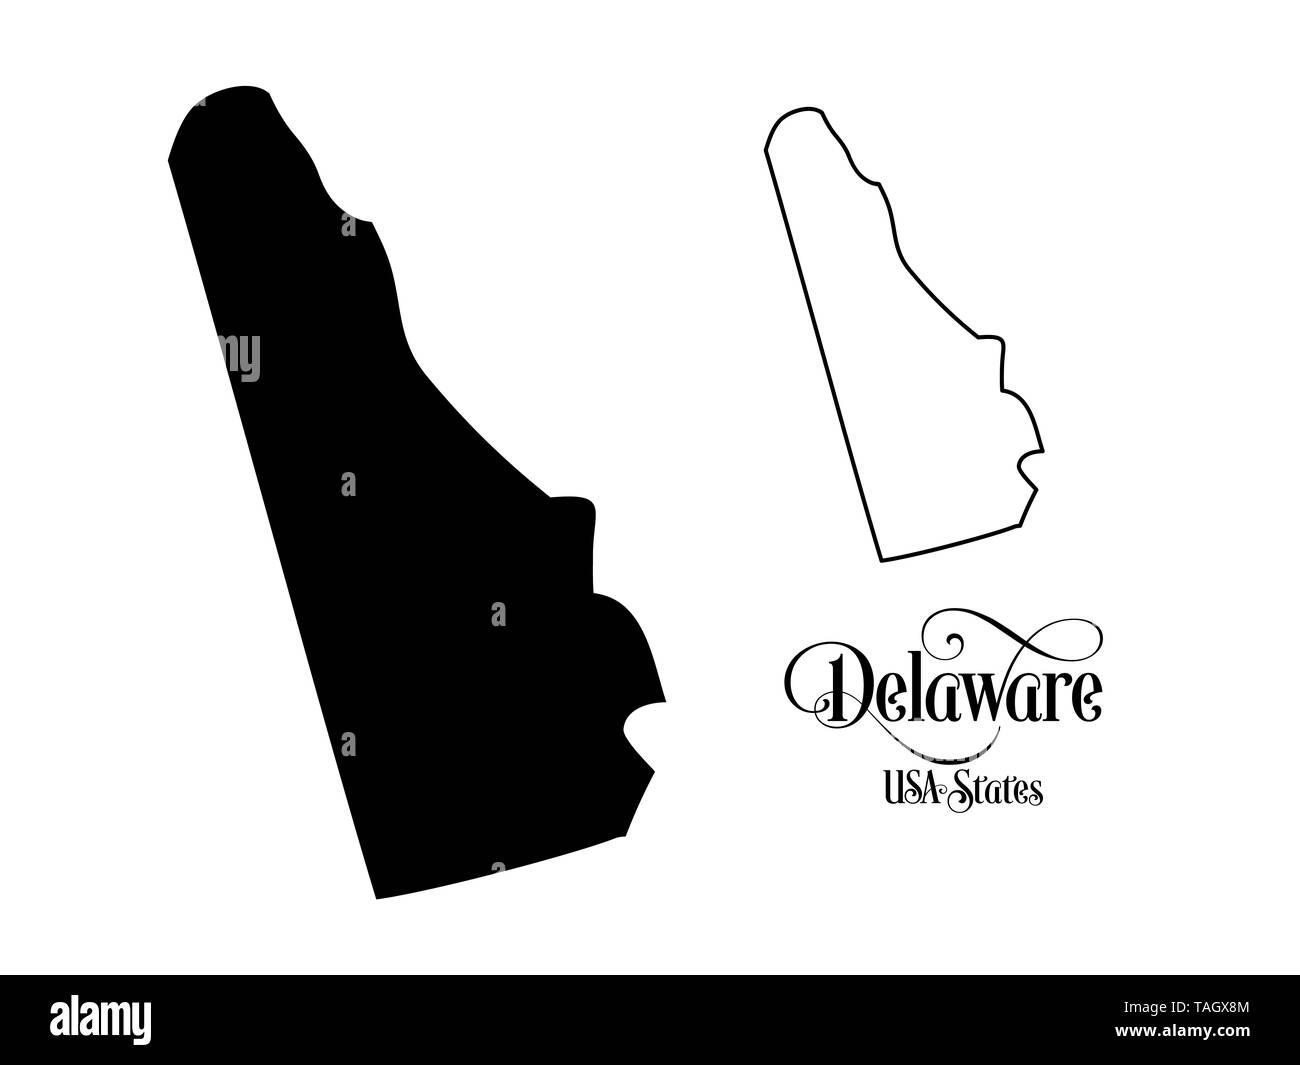 Karte der Vereinigten Staaten von Amerika (USA) Zustand von Delaware - Abbildung auf weißem Hintergrund. Stockfoto